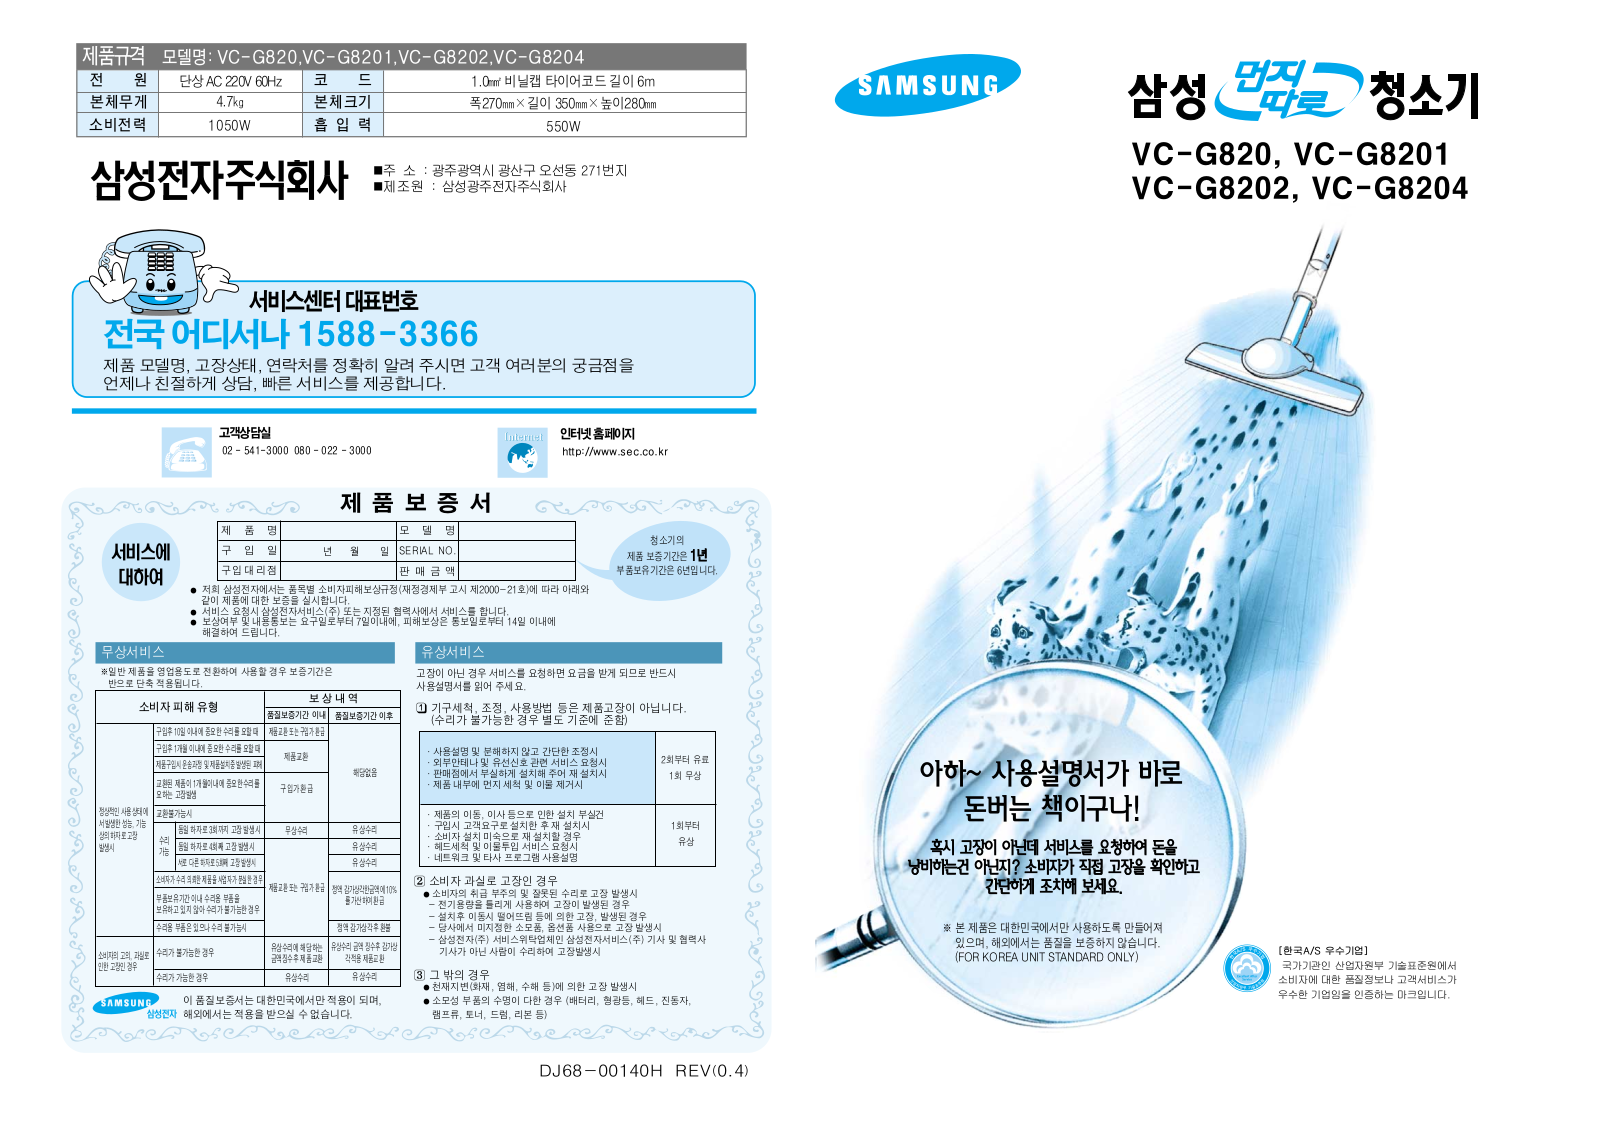 Samsung VC-G8204, VC-G820 User Manual